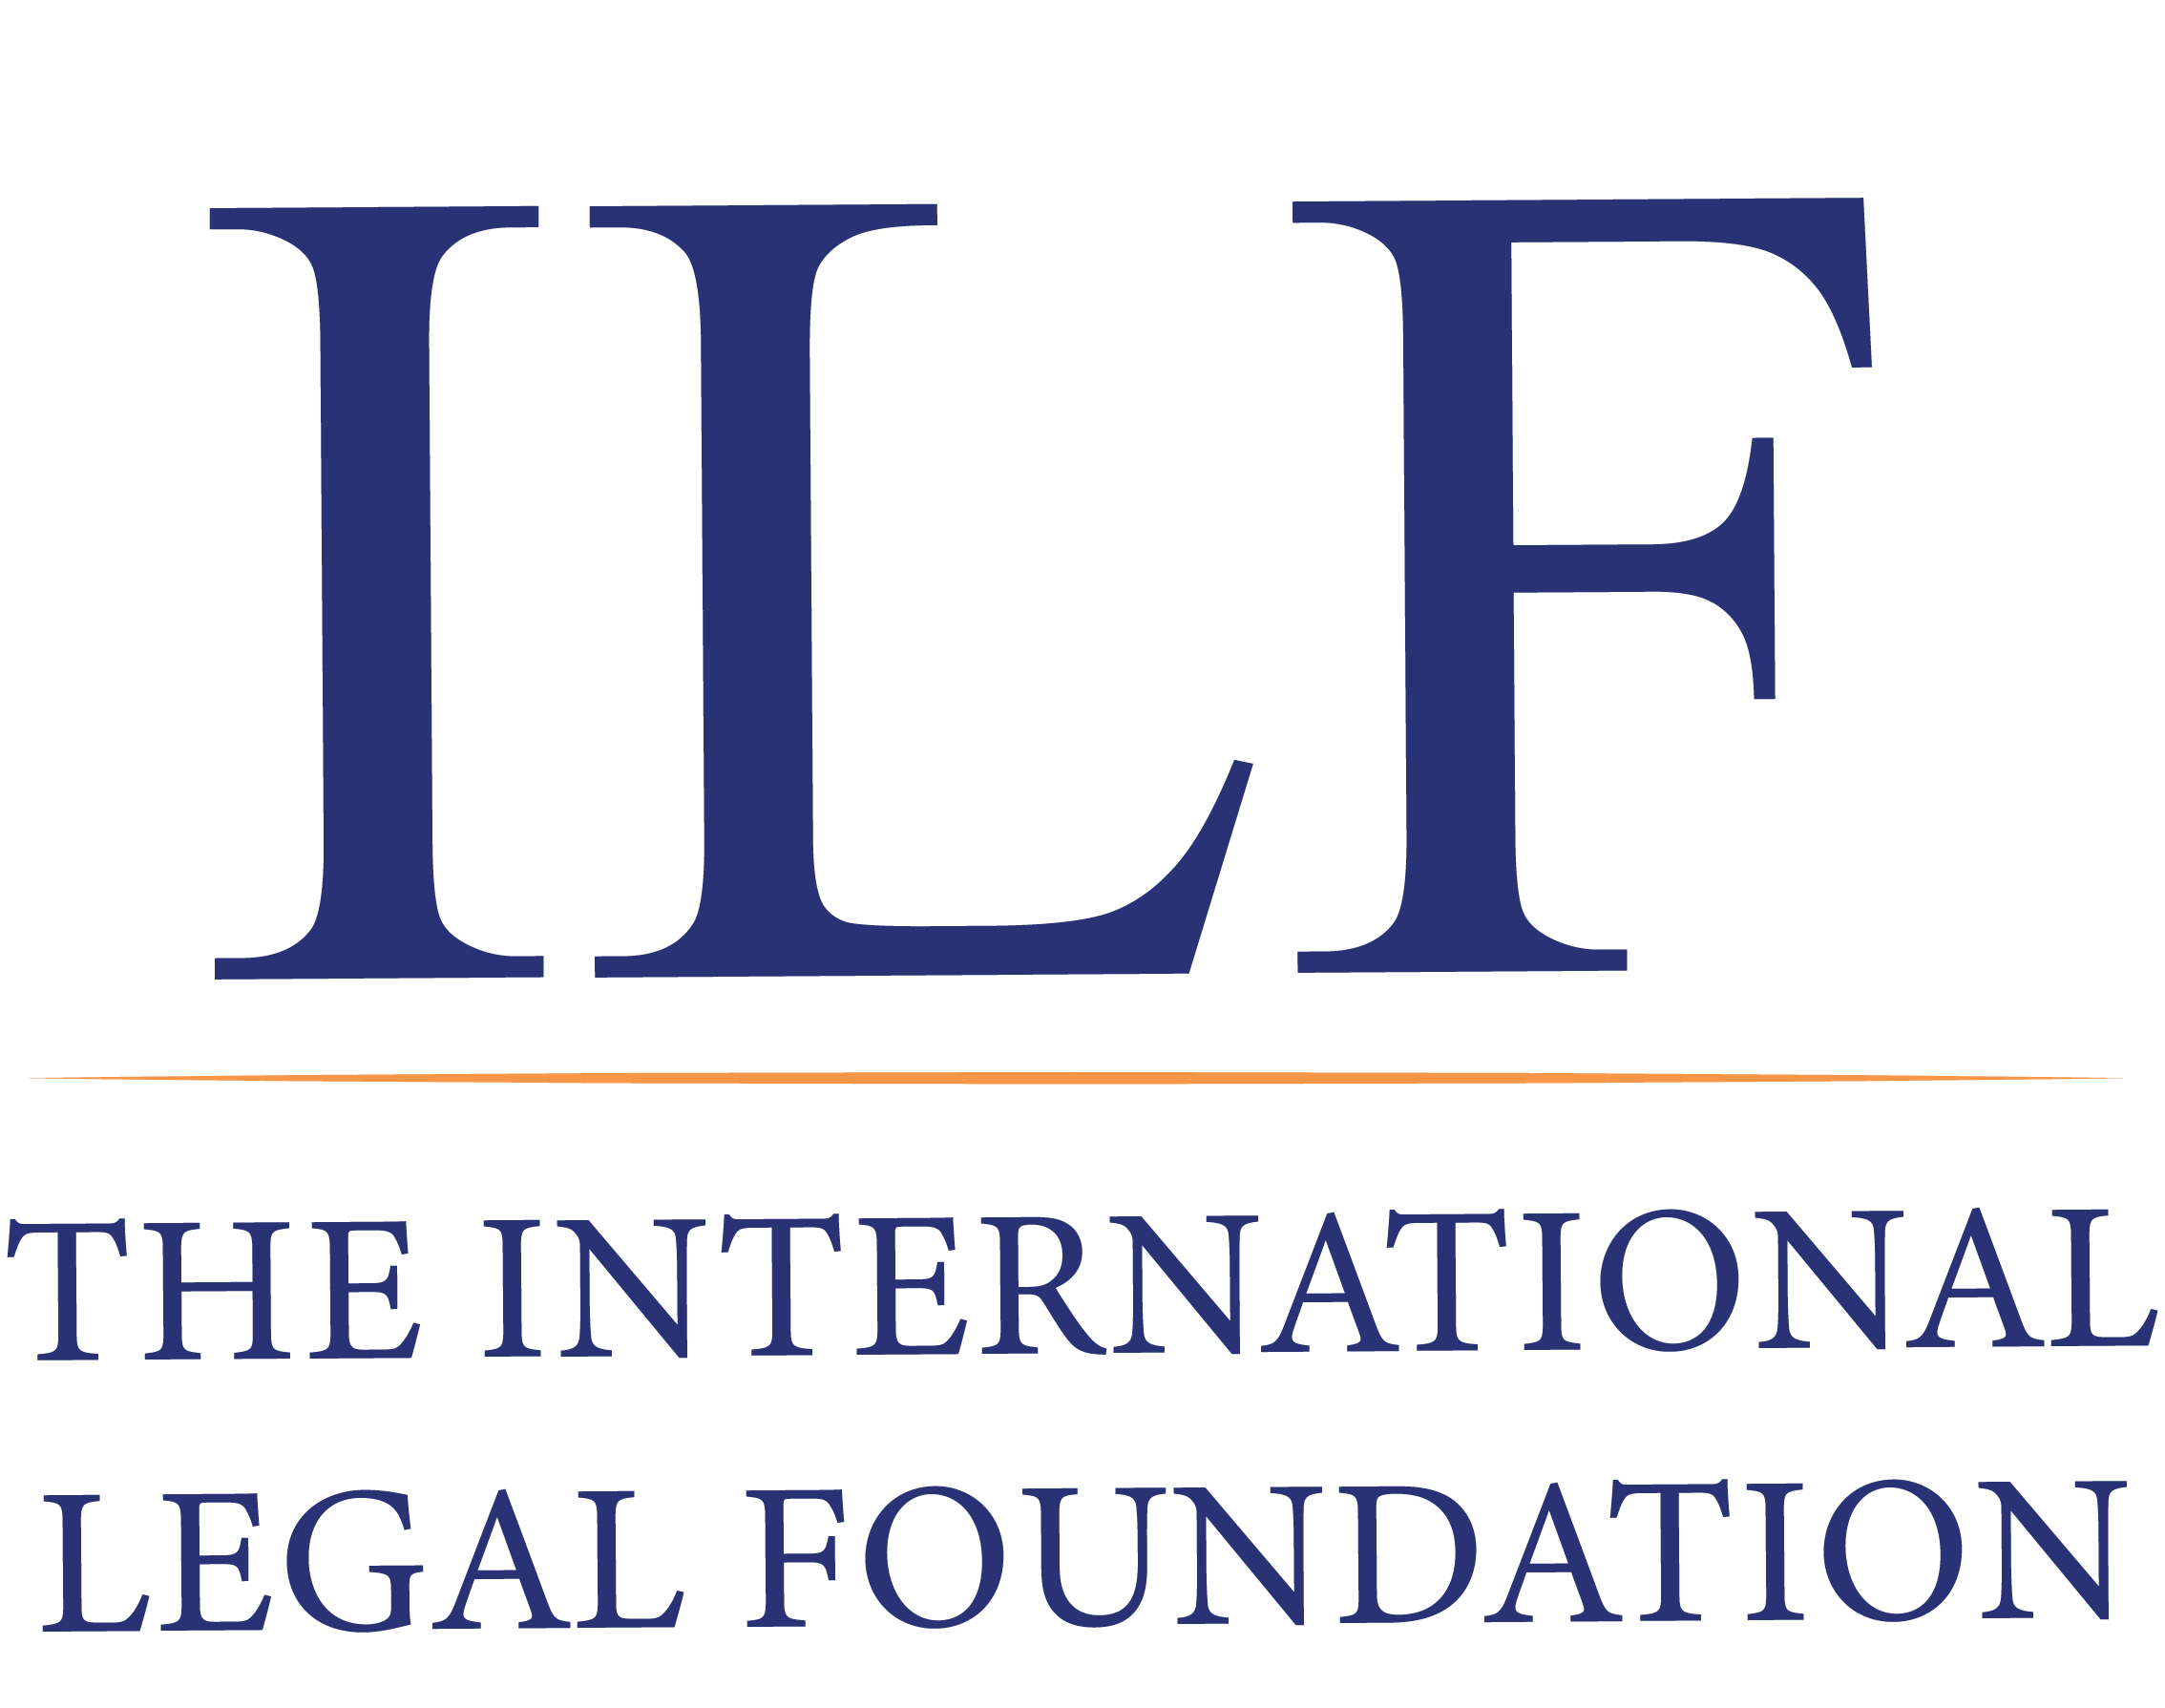 The International Legal Foundation (ILF)